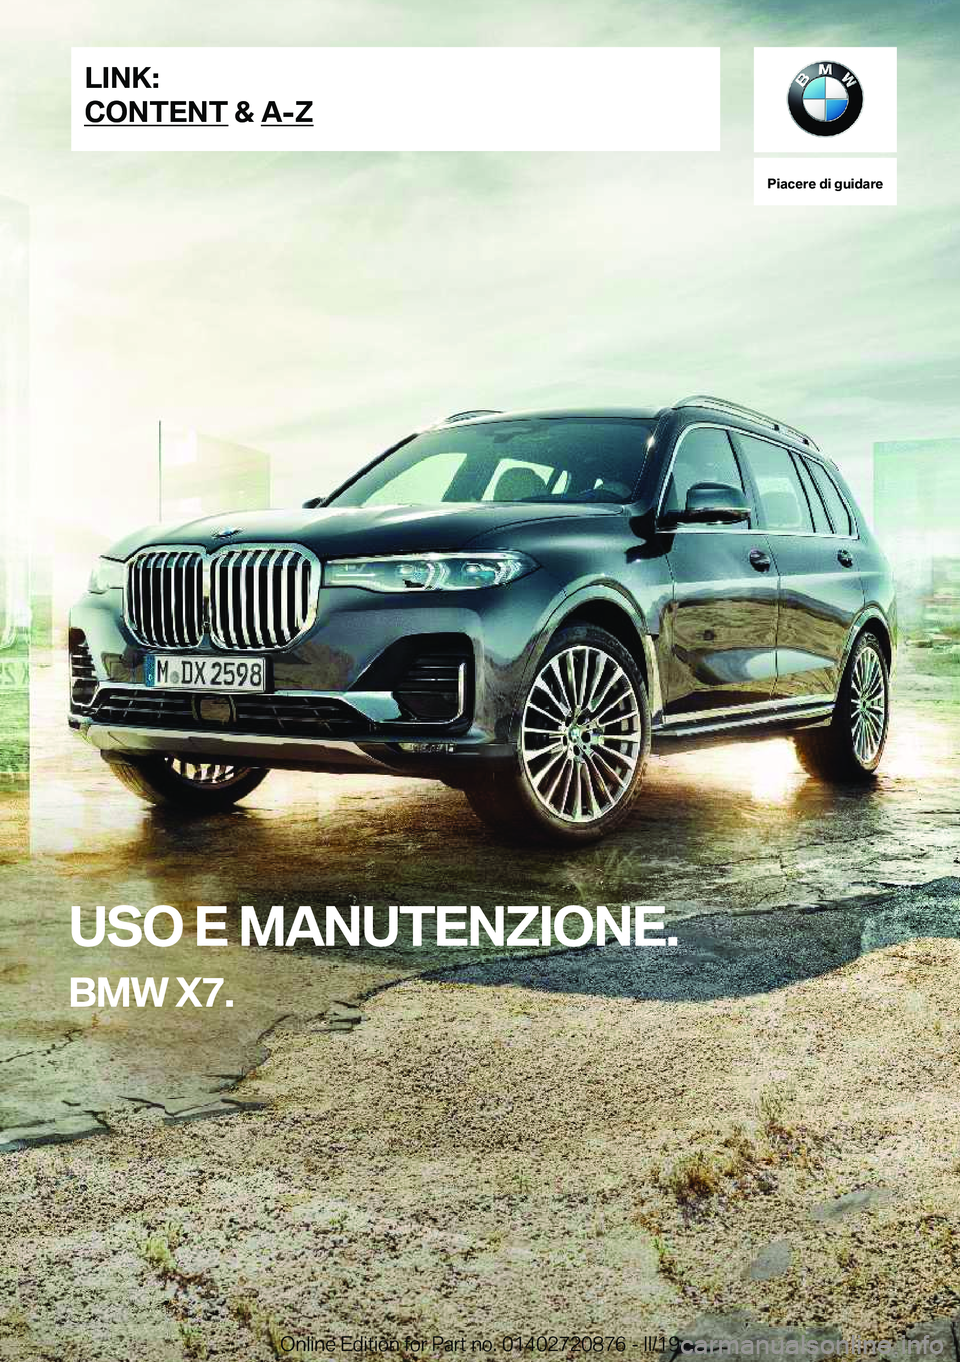 BMW X7 2019  Libretti Di Uso E manutenzione (in Italian) �P�i�a�c�e�r�e��d�i��g�u�i�d�a�r�e
�U�S�O��E��M�A�N�U�T�E�N�Z�I�O�N�E�.
�B�M�W��X�7�.�L�I�N�K�:
�C�O�N�T�E�N�T��&��A�-�Z�O�n�l�i�n�e��E�d�i�t�i�o�n��f�o�r��P�a�r�t��n�o�.��0�1�4�0�2�7�2�0�